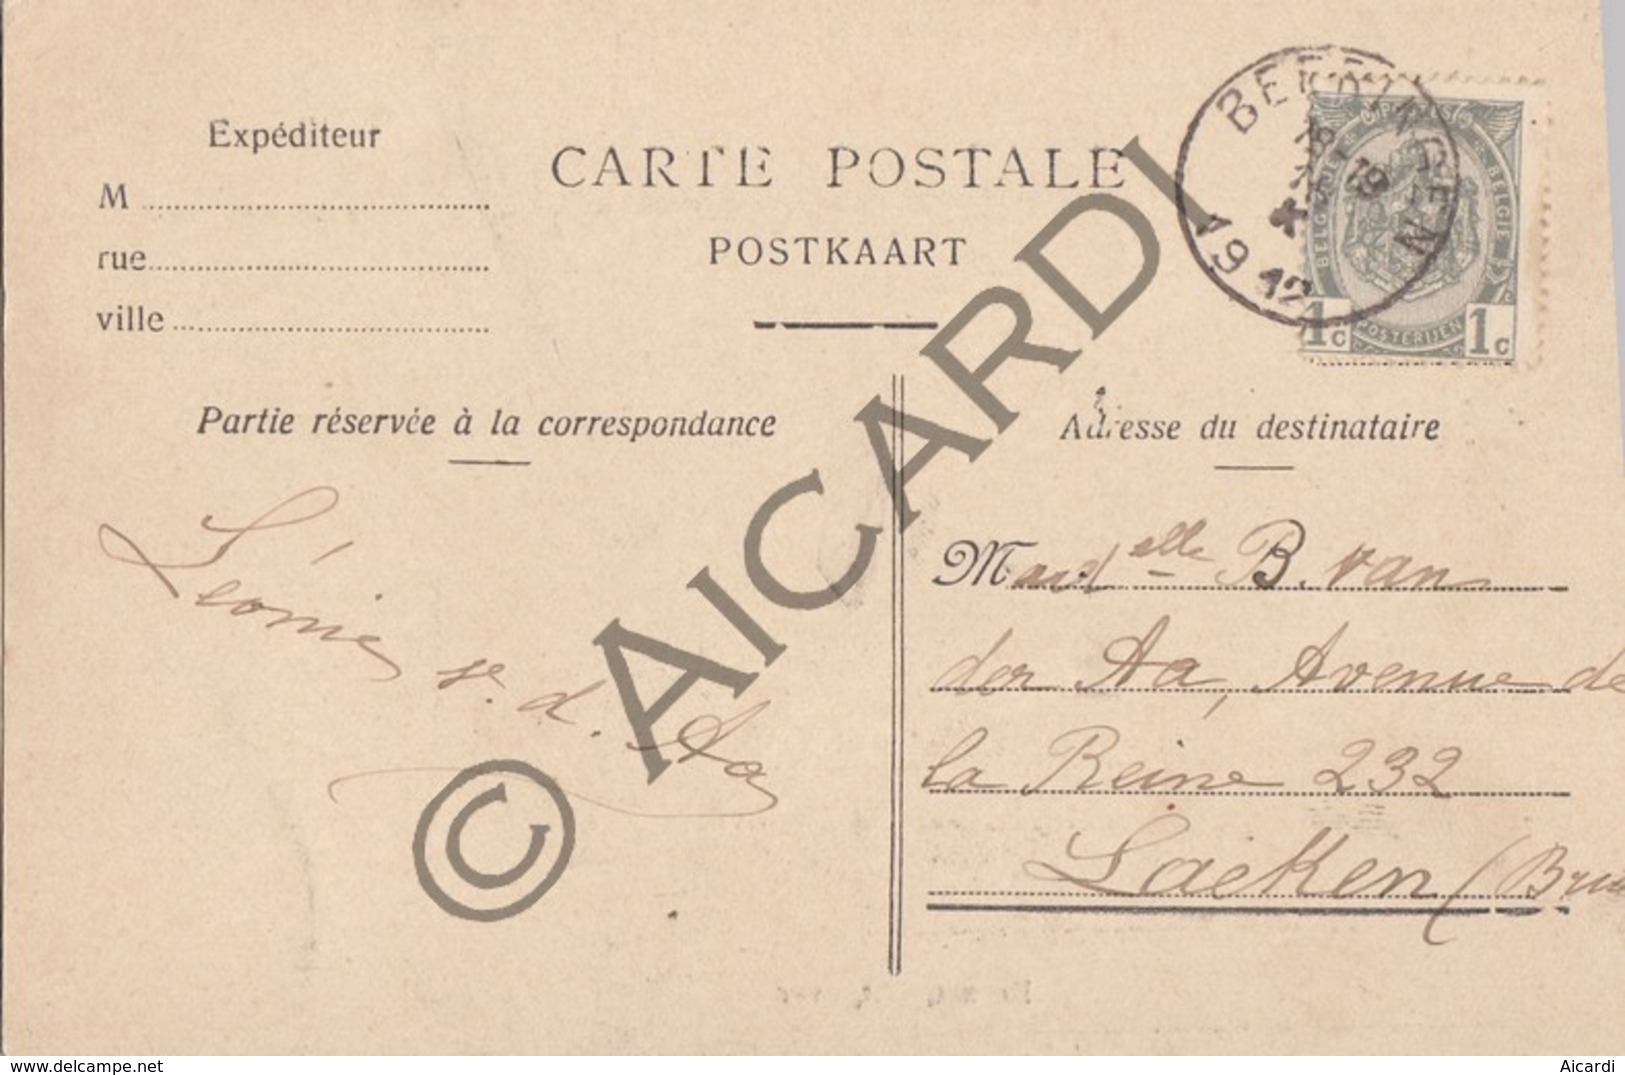 Postkaart / Carte Postale SCHULEN - Château De Schuelen  (A227) - Herk-de-Stad